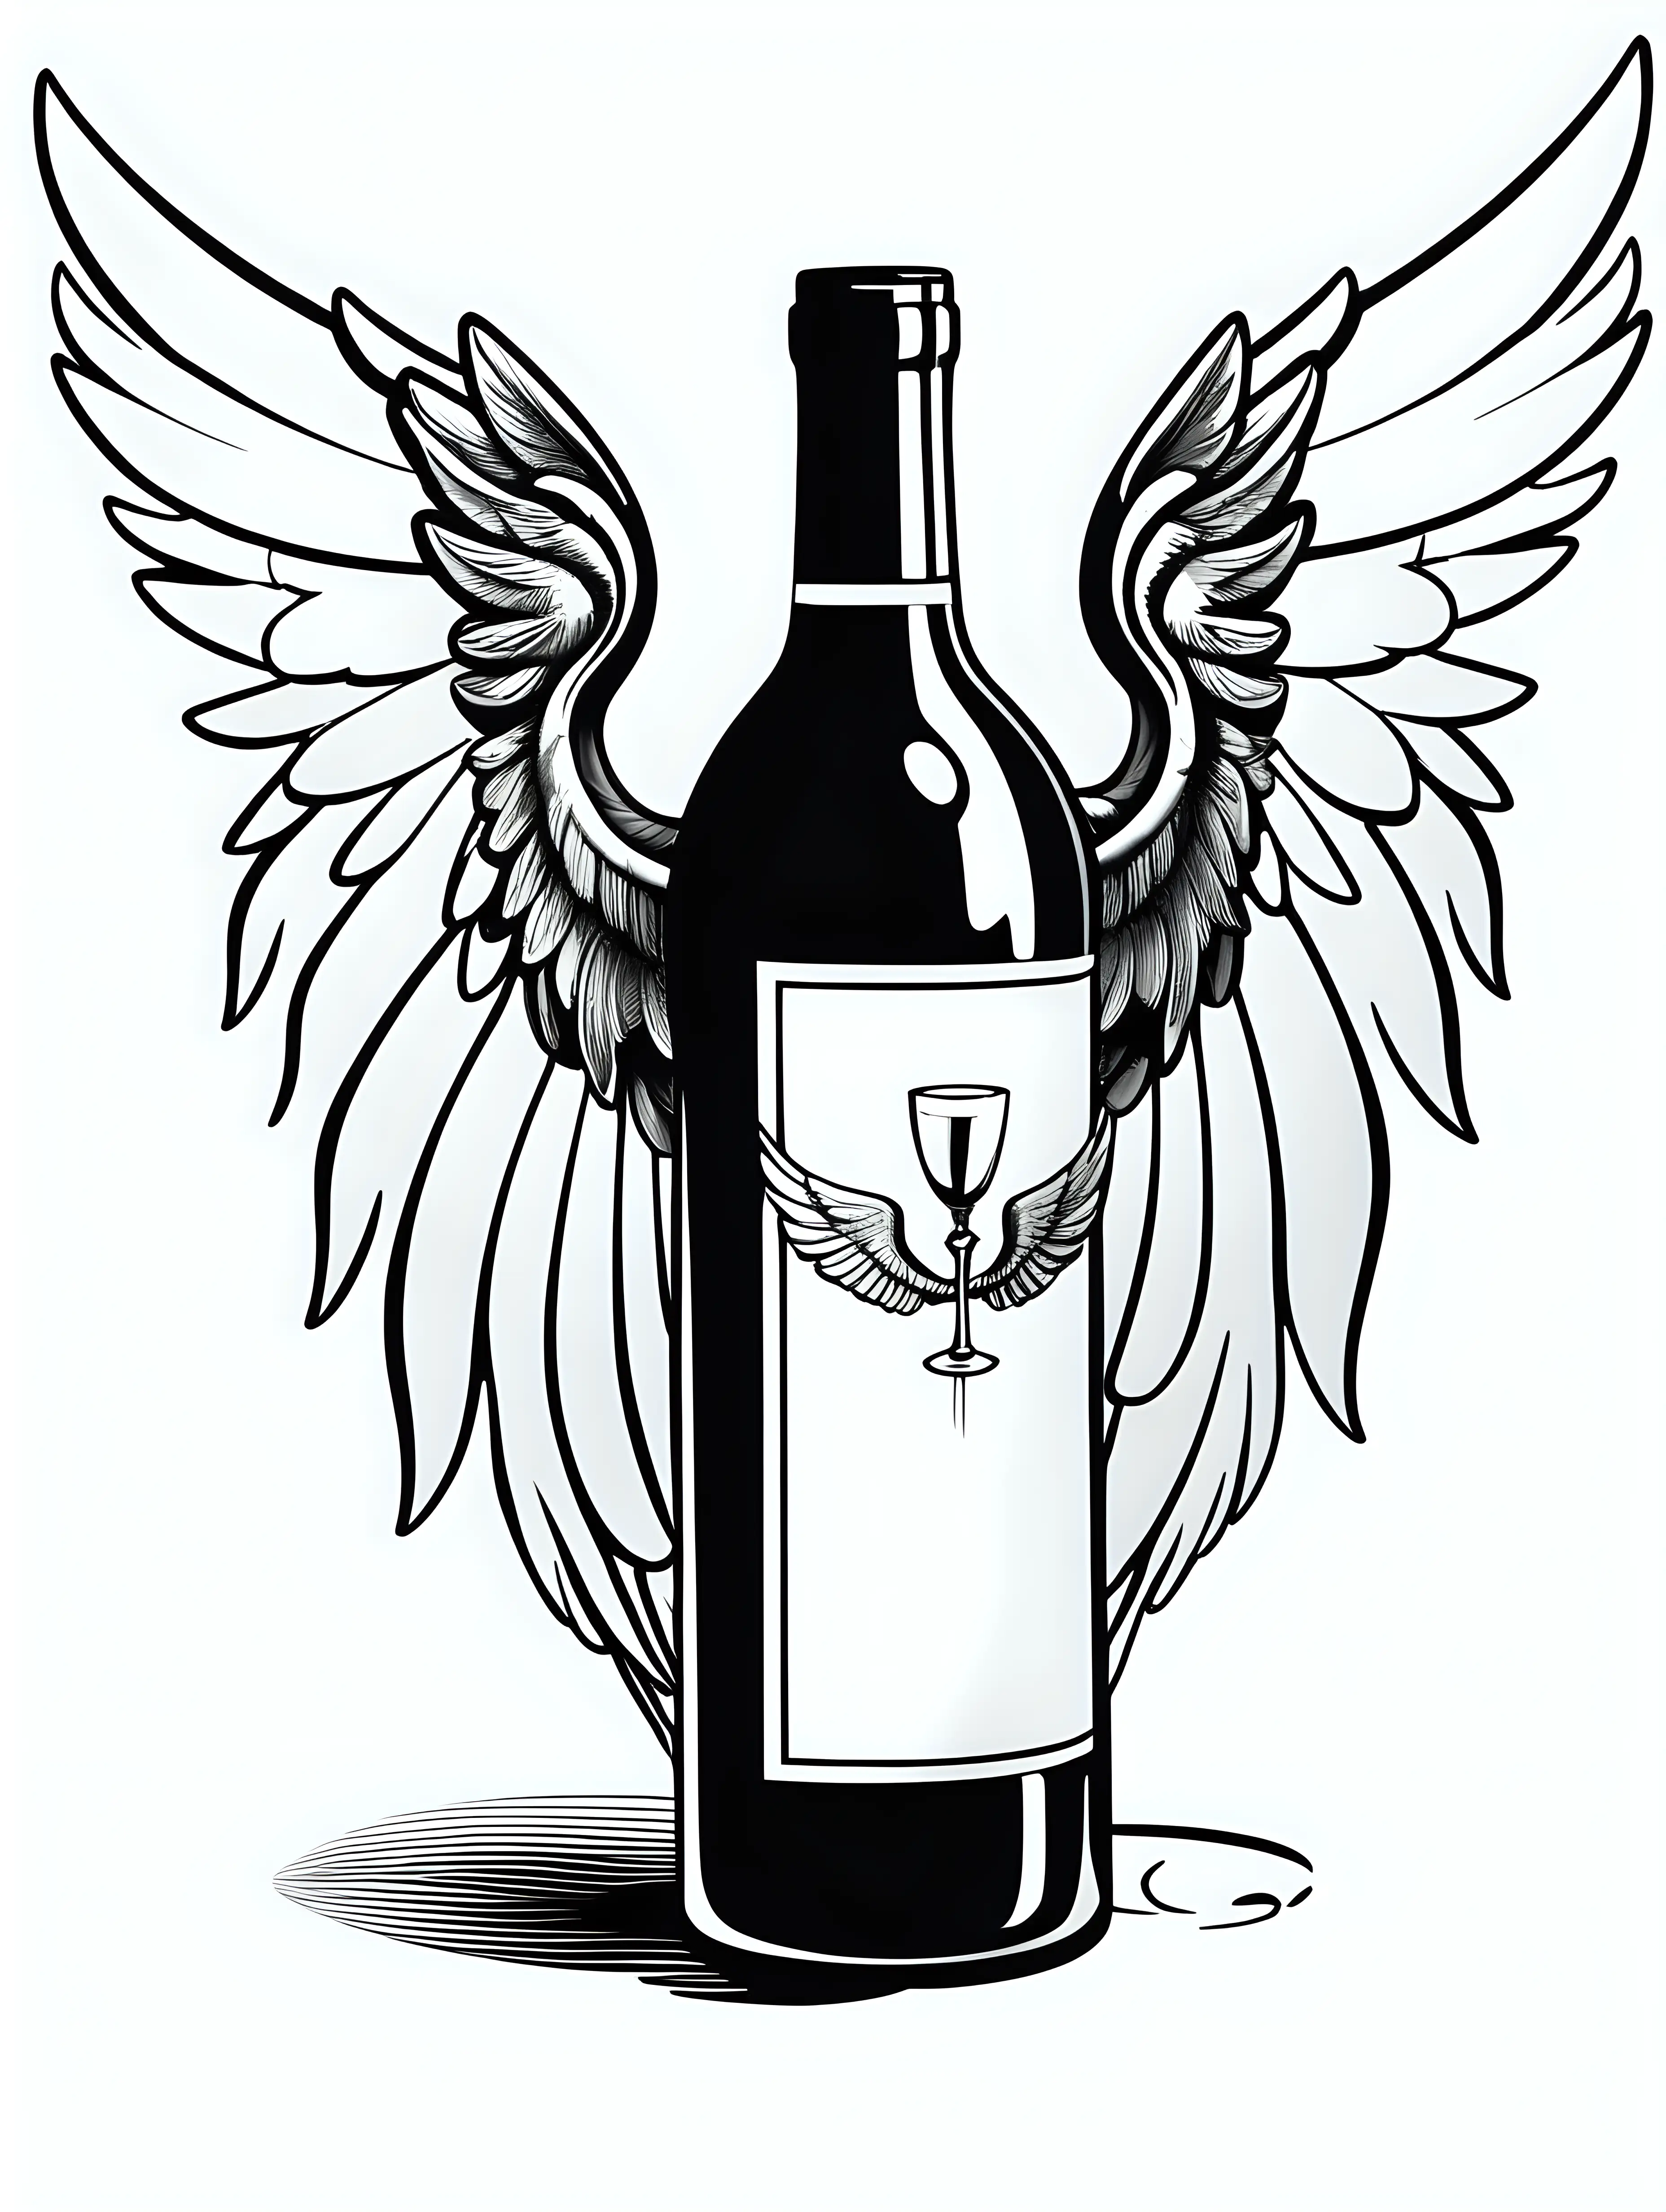 Flying Wine Bottle Cartoon Illustration on White Background